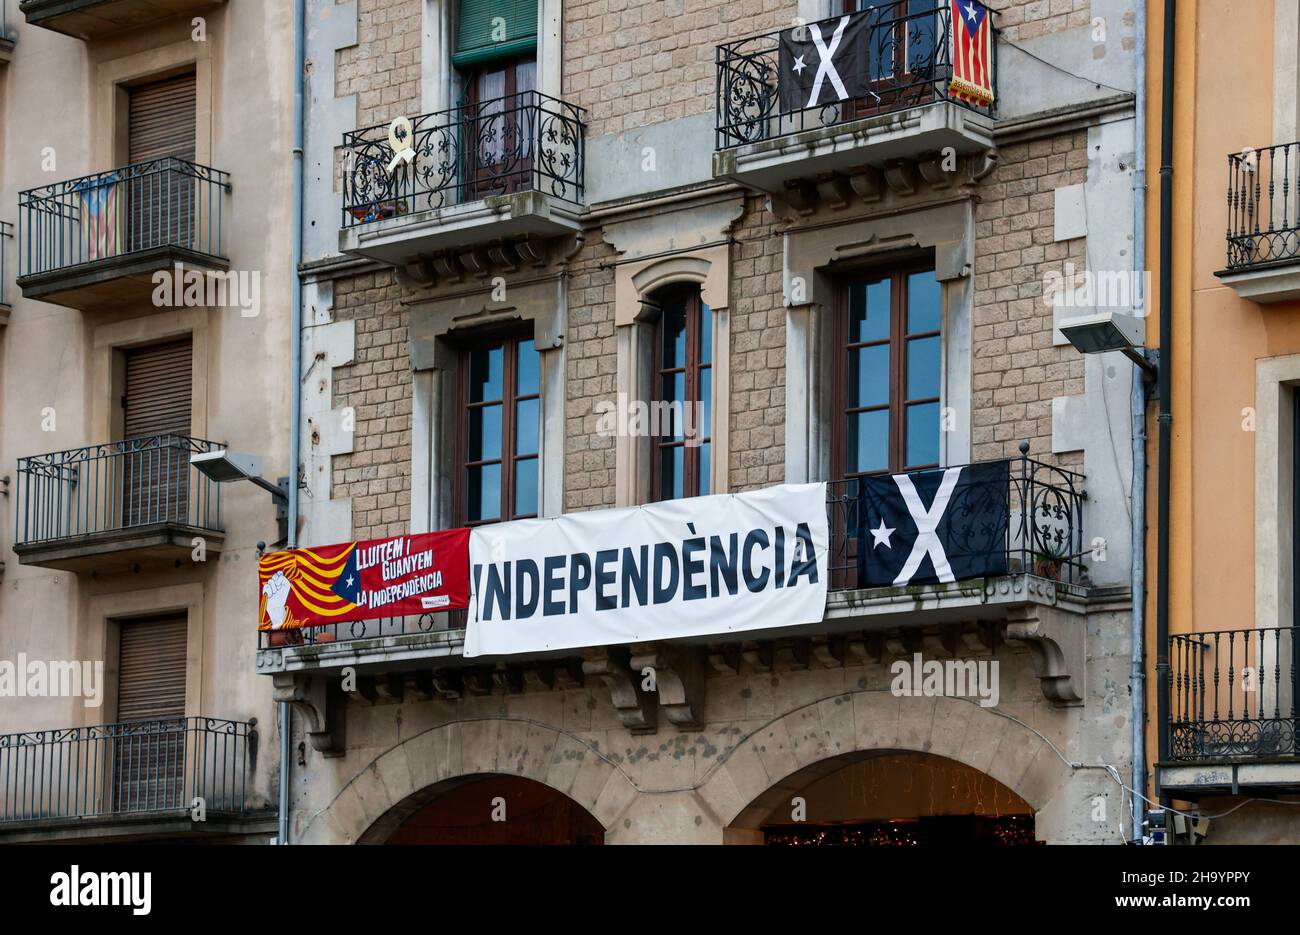 Propagande d'indépendance et drapeaux sur les bâtiments de la ville catalane de Vic, Catalogne, Espagne Banque D'Images